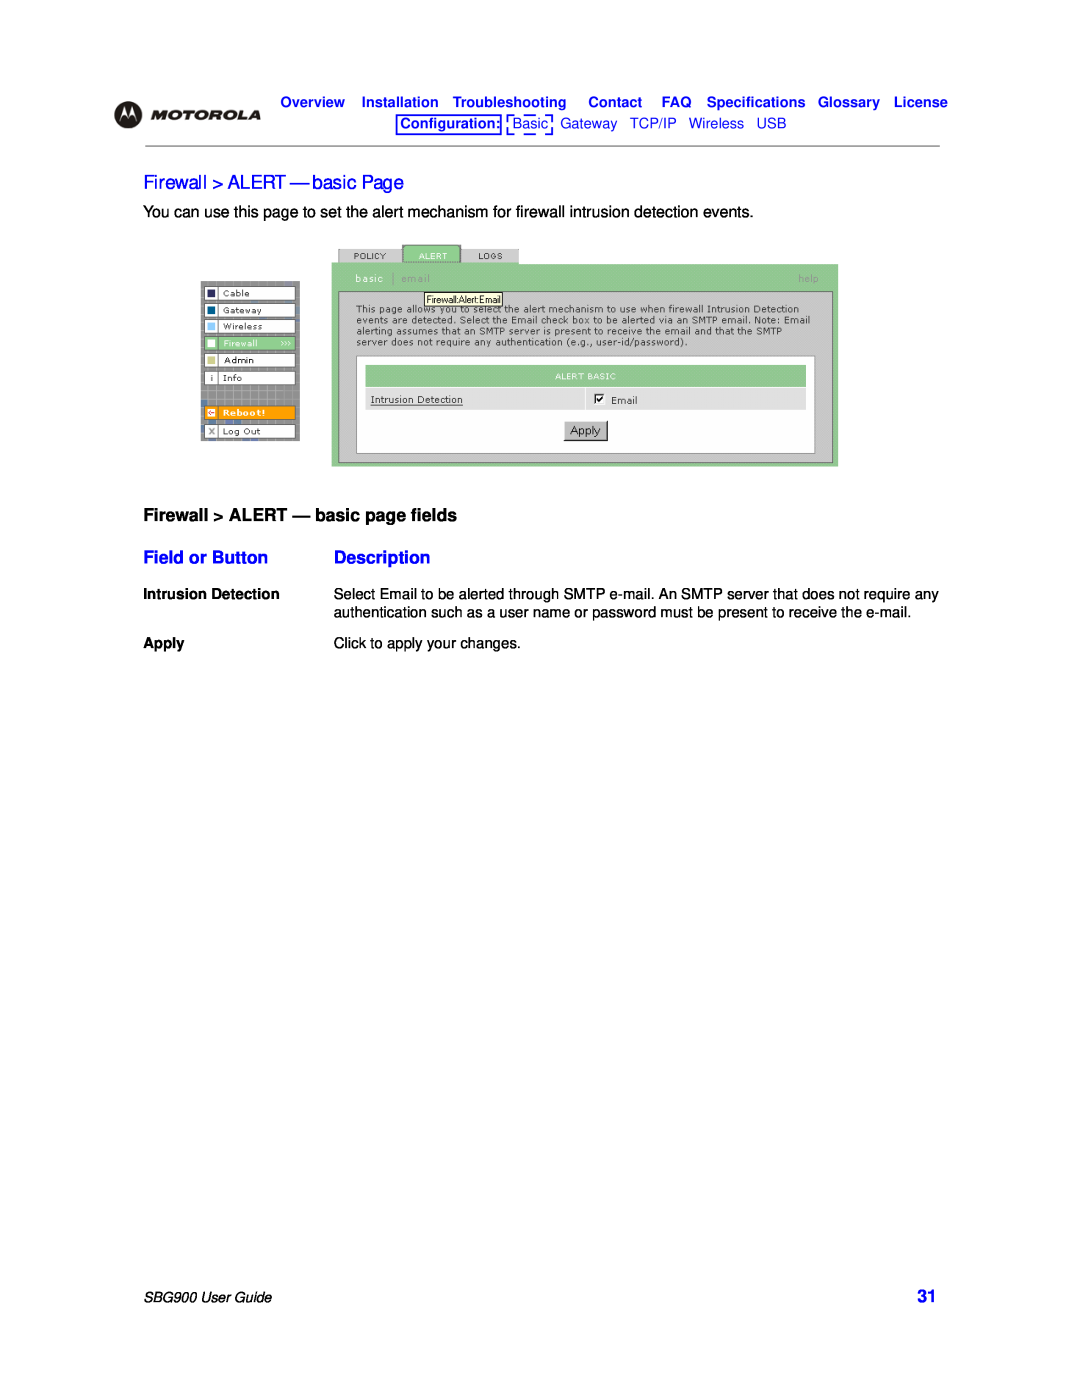 Motorola SBG900 manual Firewall ALERT - basic Page, Firewall ALERT - basic page fields, Field or Button, Description 